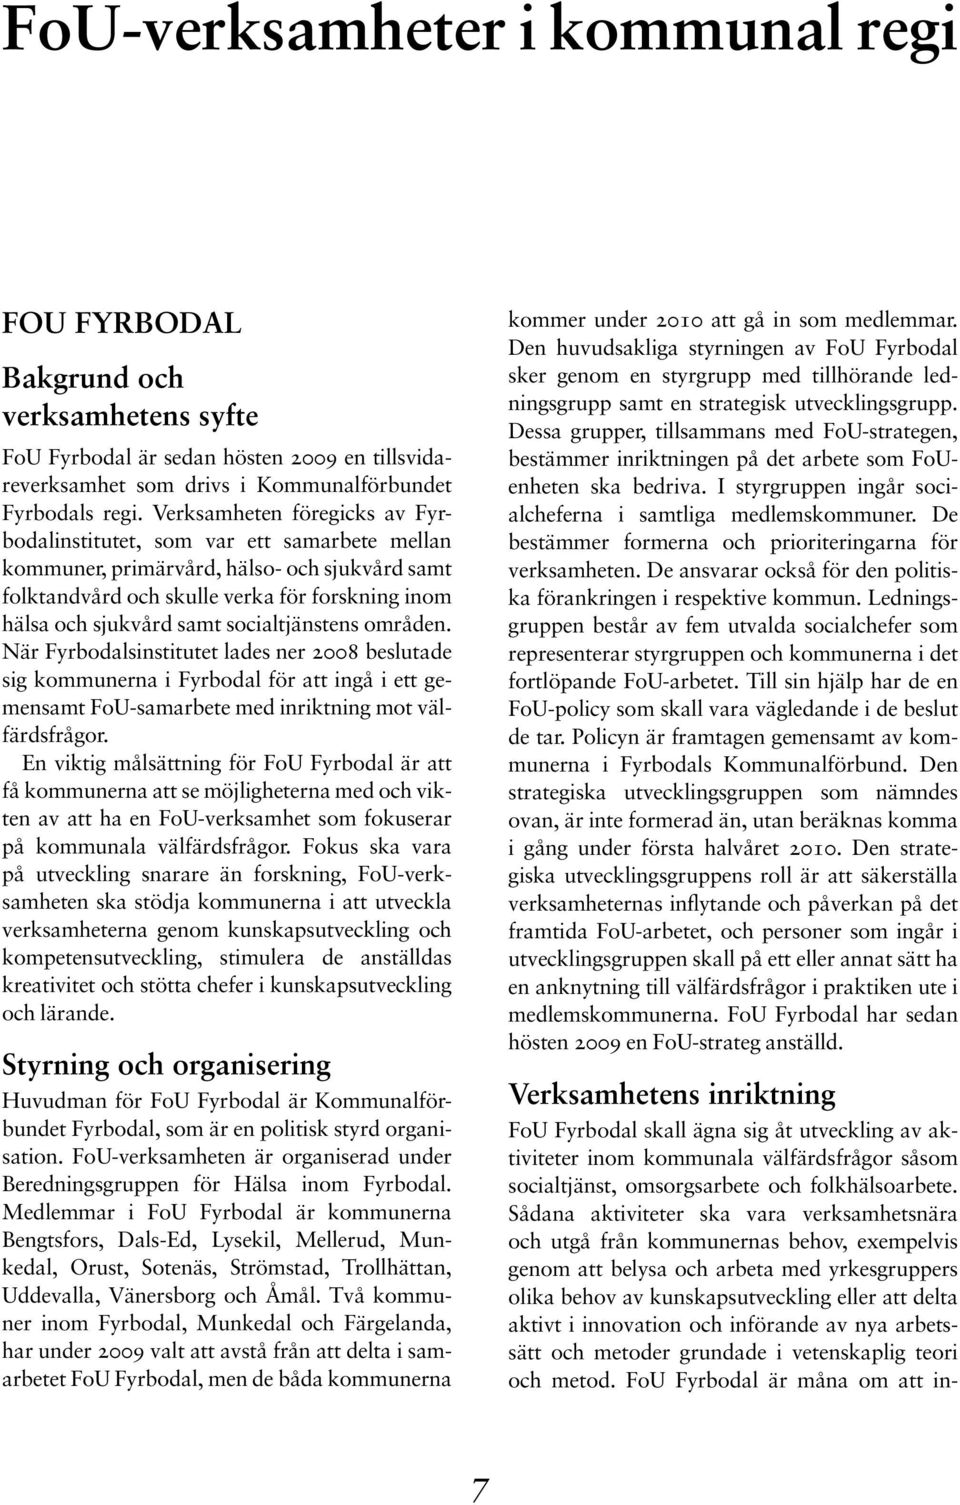 socialtjänstens områden. När Fyrbodalsinstitutet lades ner 2008 beslutade sig kommunerna i Fyrbodal för att ingå i ett gemensamt FoU-samarbete med inriktning mot välfärdsfrågor.